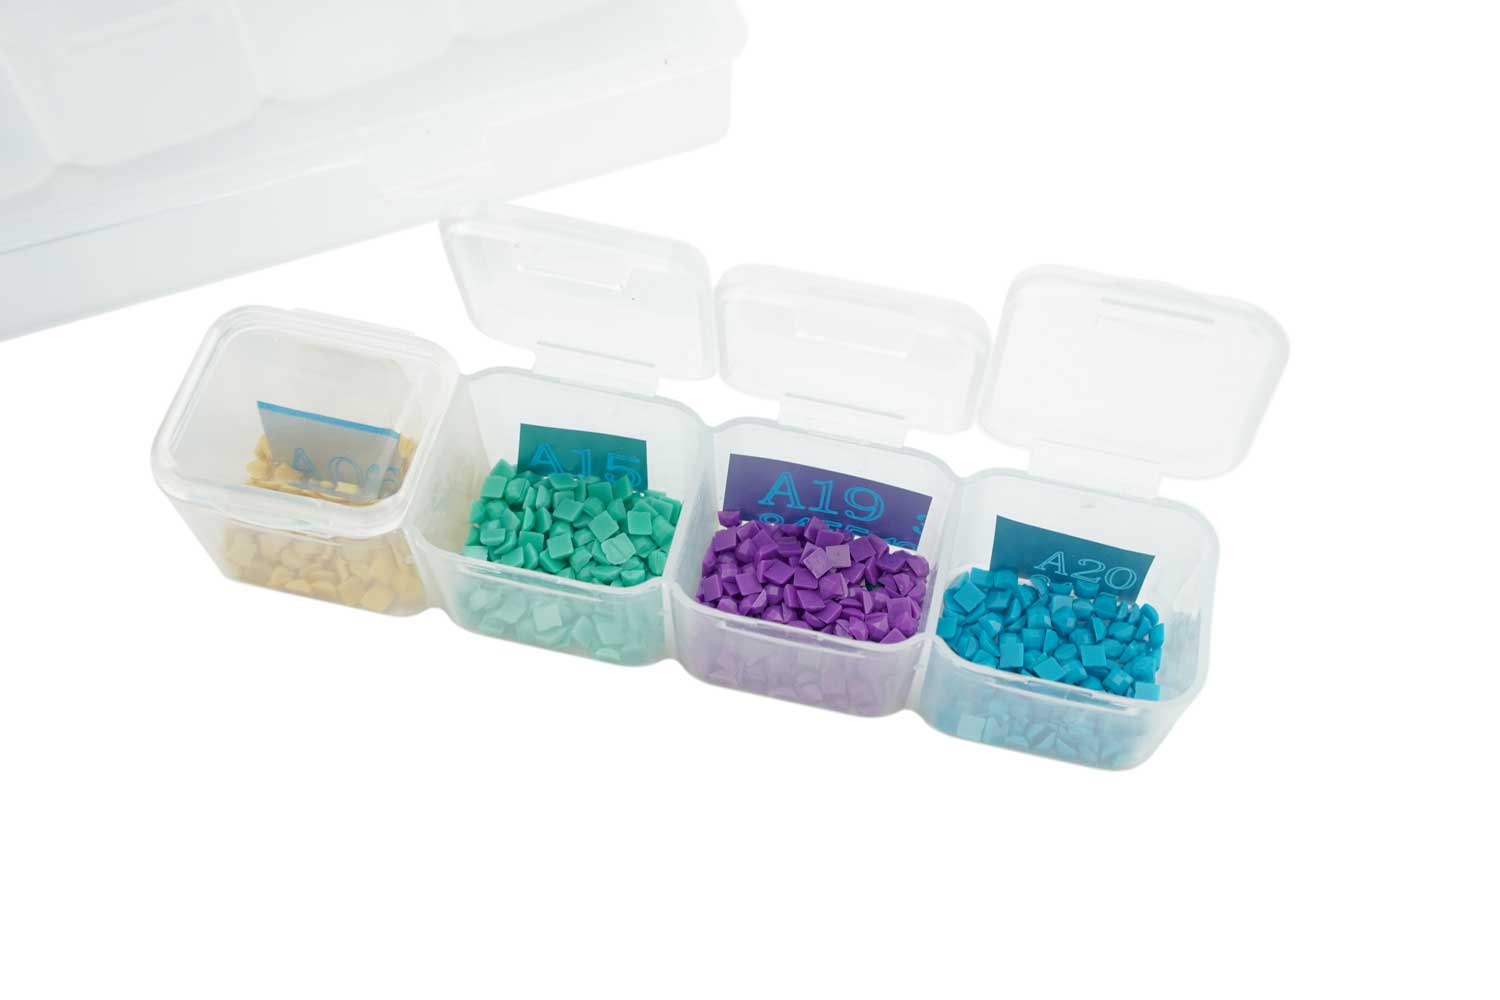 Boîte de rangement,Boite Rangement Perles en Plastique Transparent,Petits  Pots Amovibles avec Couvercle,pour Perles, Bijoux,Broderie